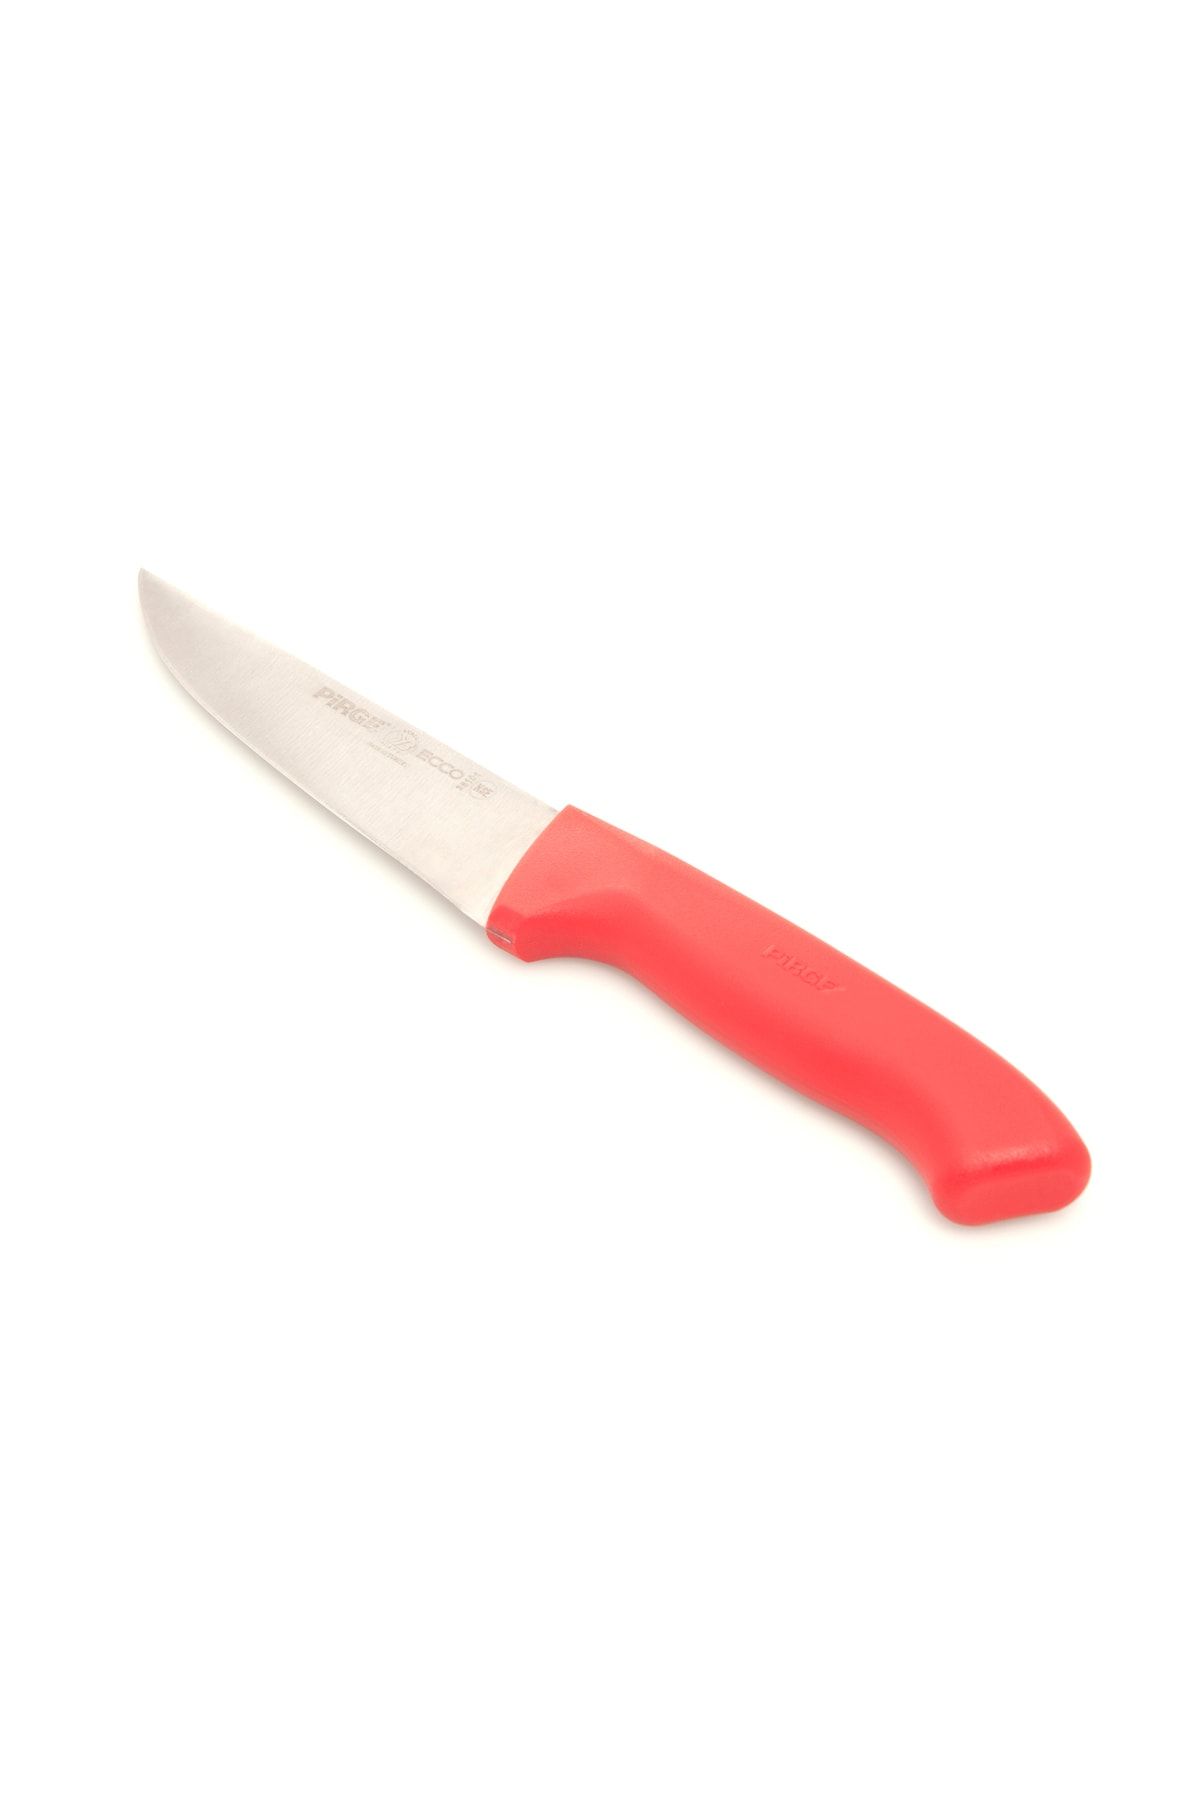 Pirge Ecco Et Bıçağı - Kırmızı - 14,5 Cm